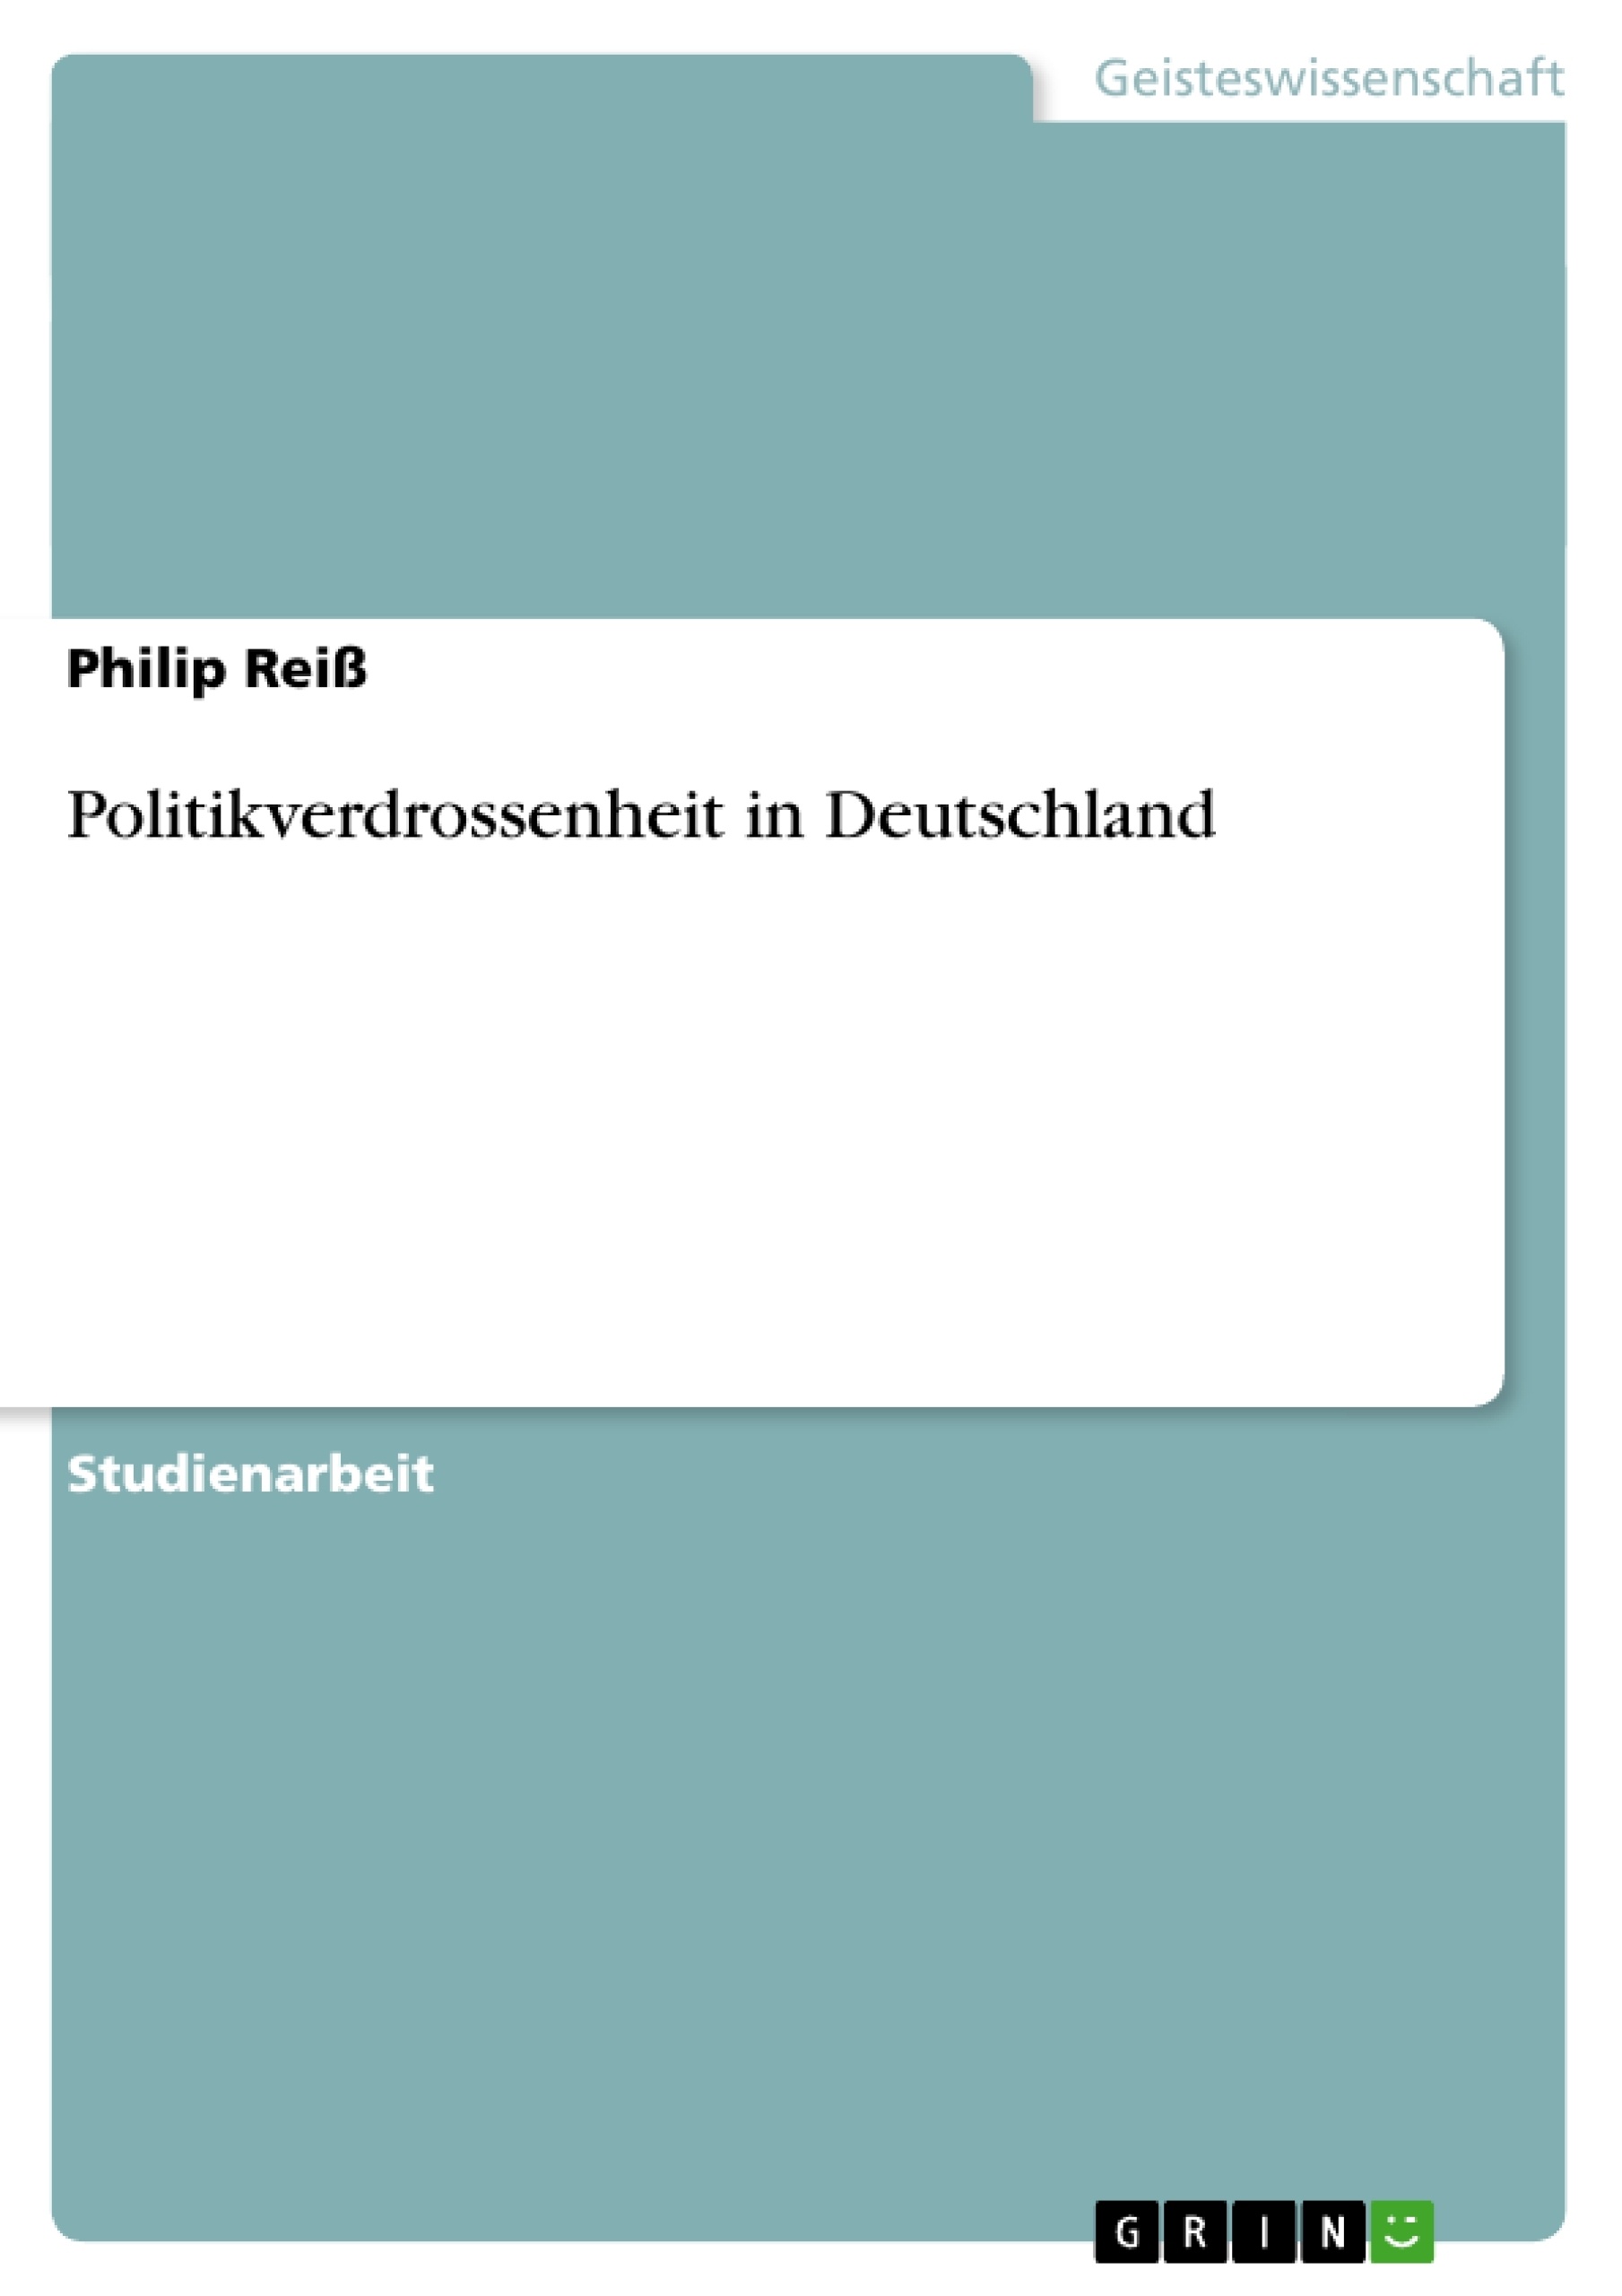 Title: Politikverdrossenheit in Deutschland